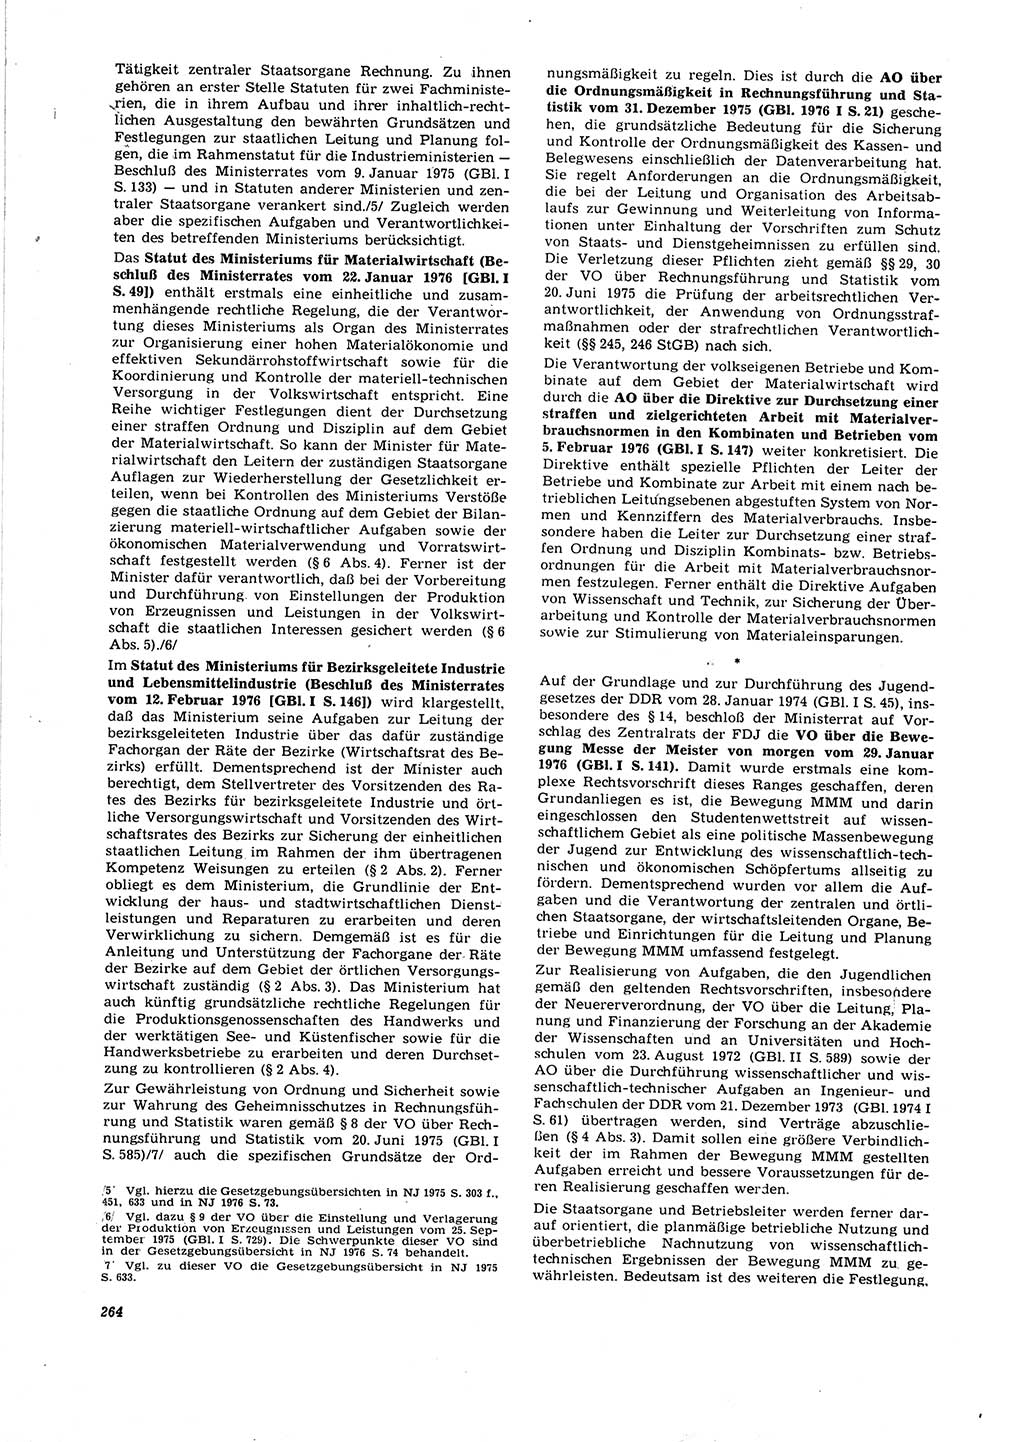 Neue Justiz (NJ), Zeitschrift für Recht und Rechtswissenschaft [Deutsche Demokratische Republik (DDR)], 30. Jahrgang 1976, Seite 264 (NJ DDR 1976, S. 264)